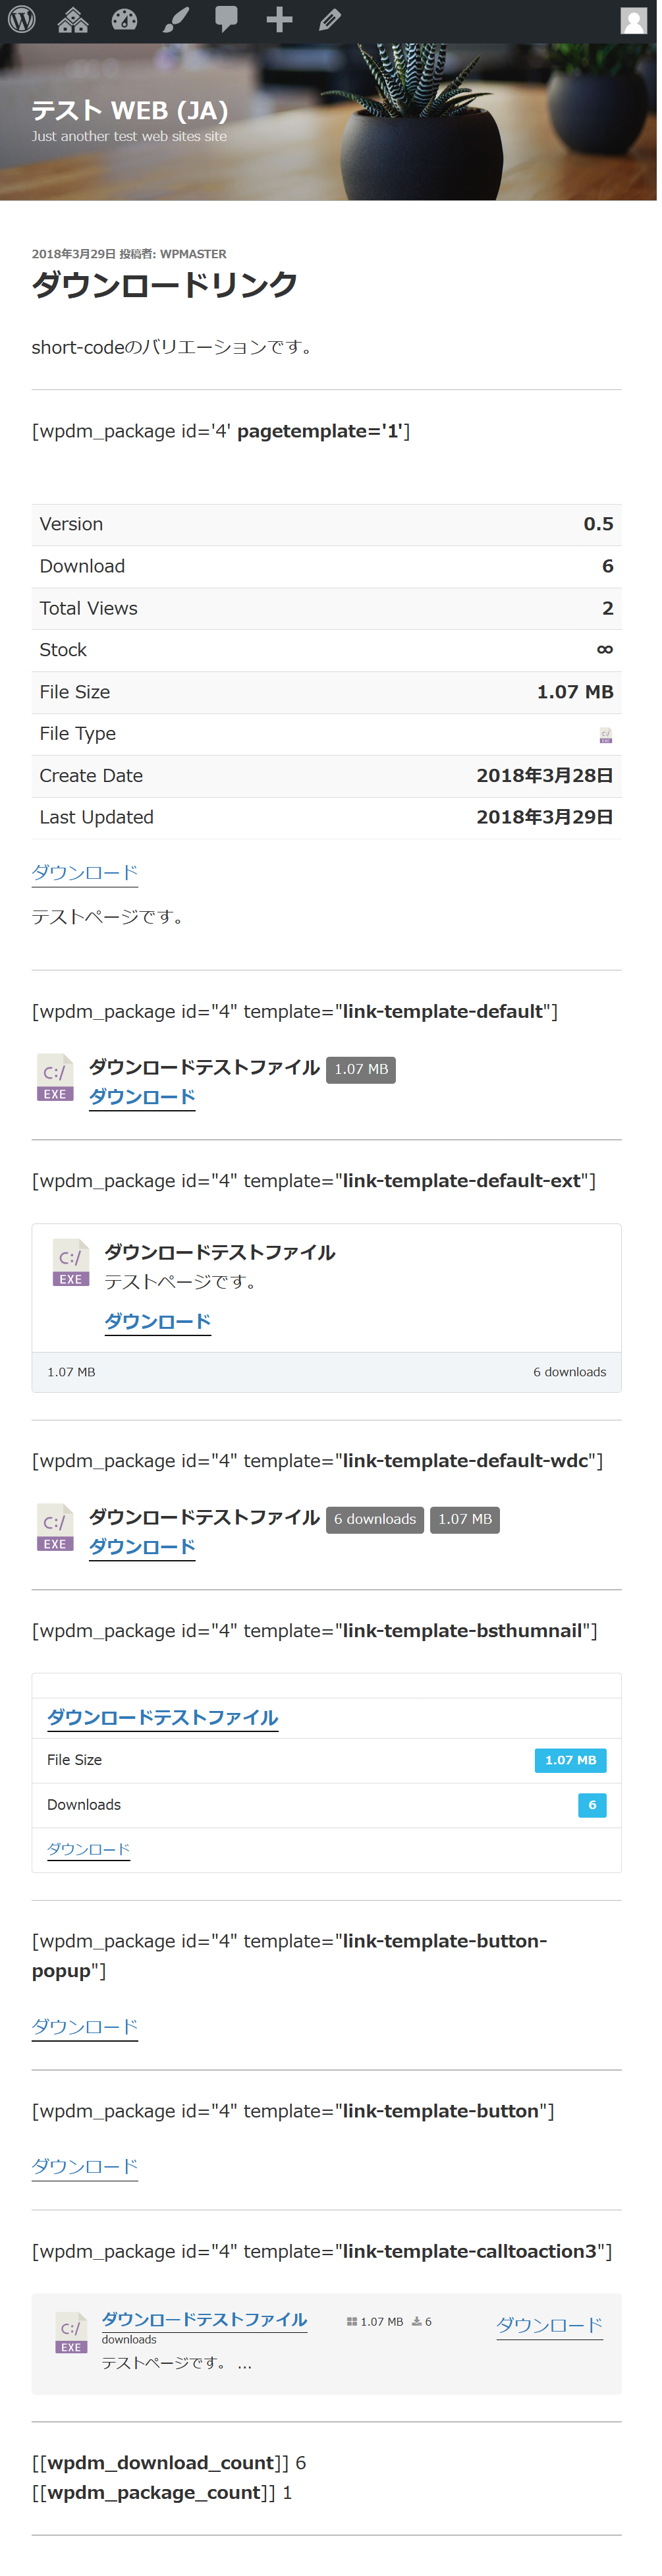 Variation of download link short-code